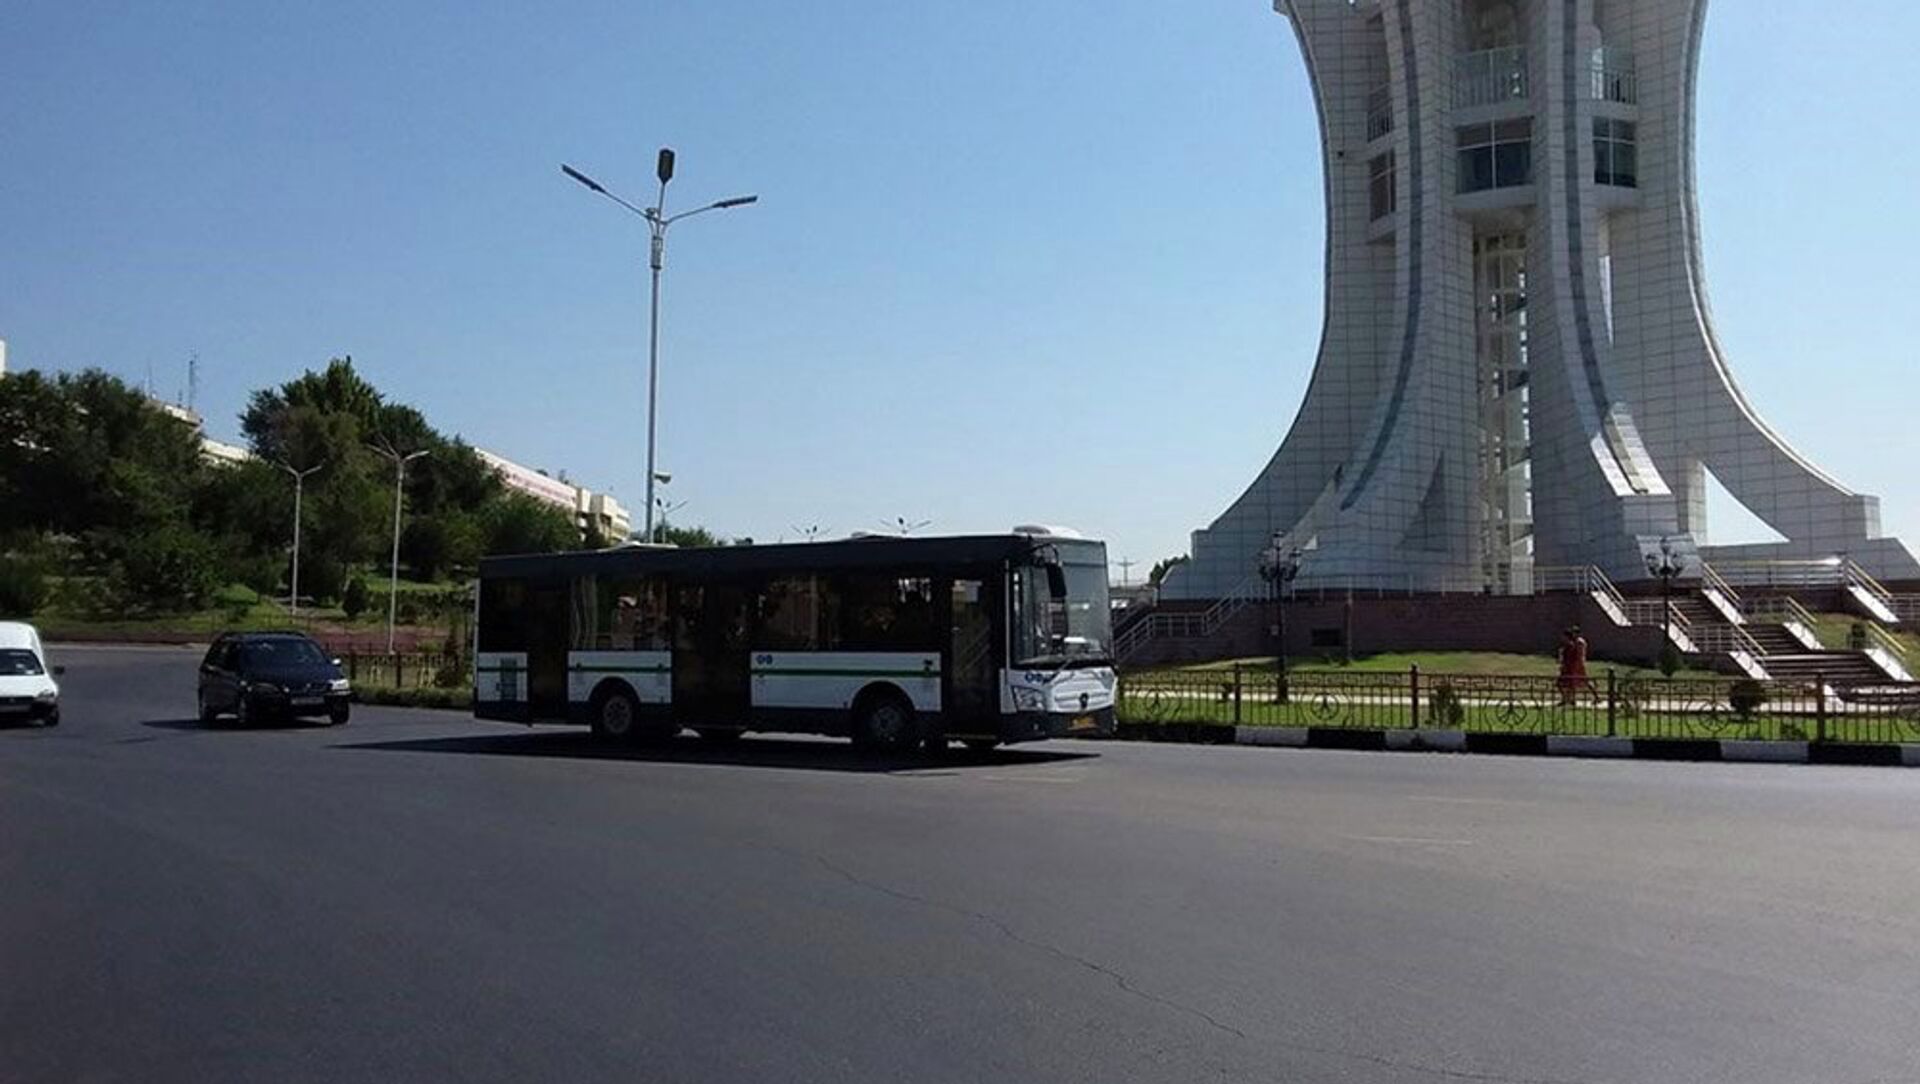 Автобусҳои нав аз Русия ба Хуҷанд ворид шуданд - Sputnik Таджикистан, 1920, 02.02.2021